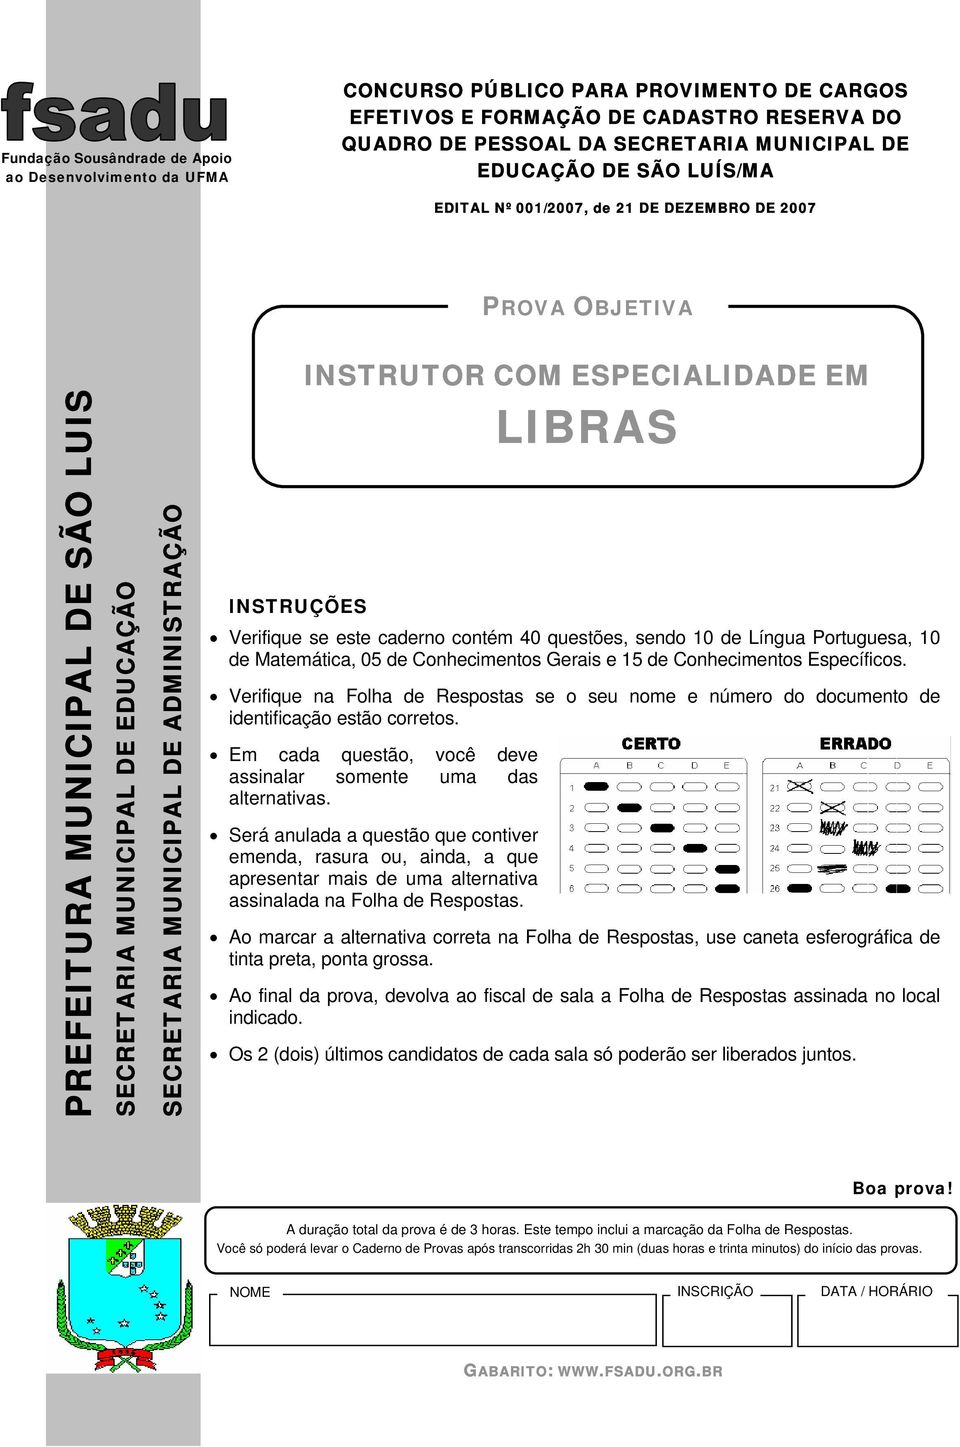 ESPECIALIDADE EM LIBRAS INSTRUÇÕES Verifique se este caderno contém 40 questões, sendo 10 de Língua Portuguesa, 10 de Matemática, 05 de Conhecimentos Gerais e 15 de Conhecimentos Específicos.